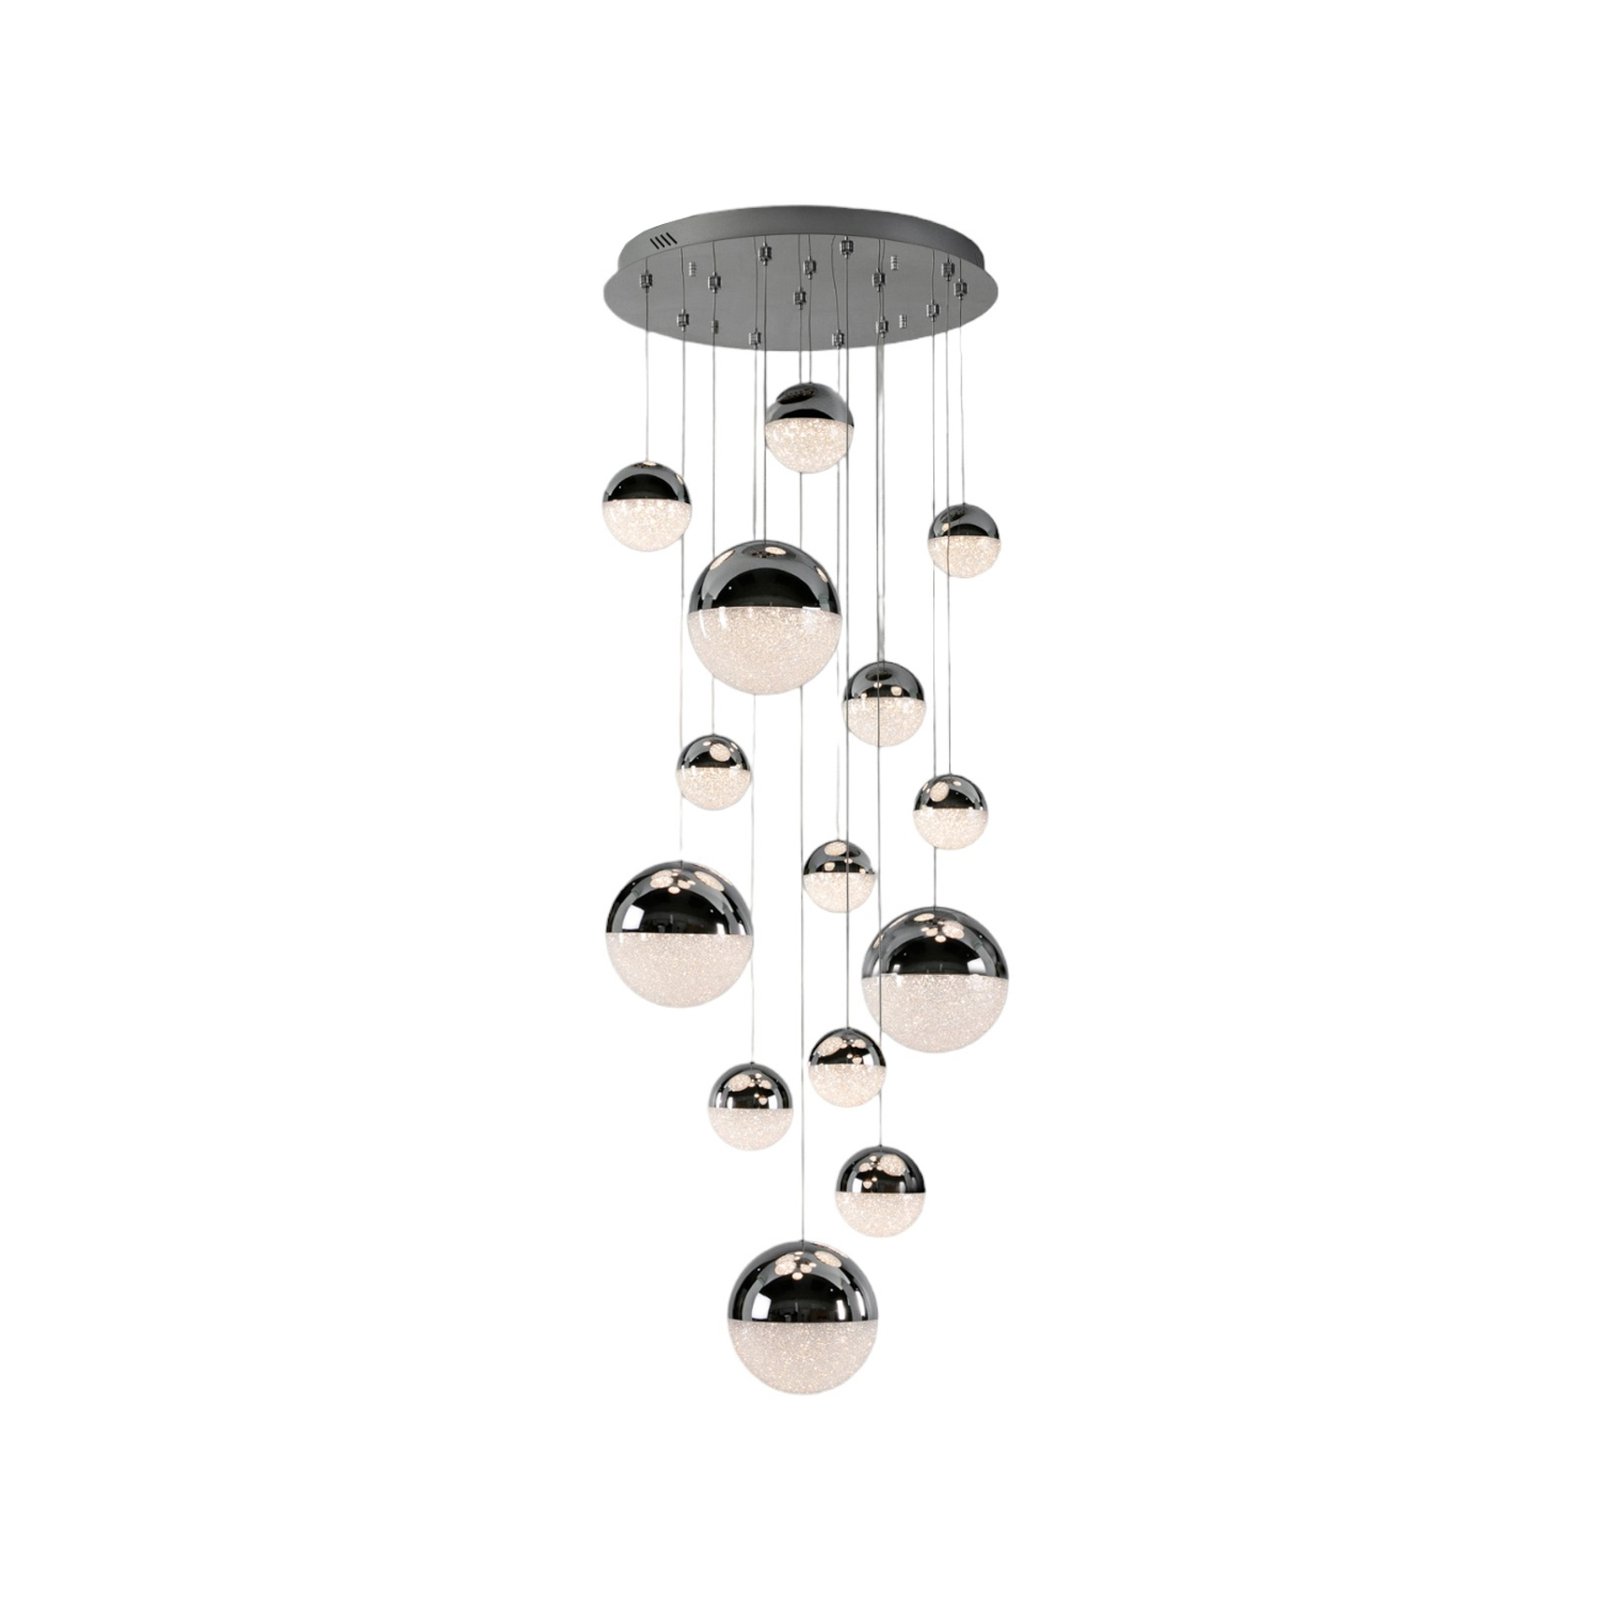 LED sospeso Sphere, cromo/trasparente 14 luci App